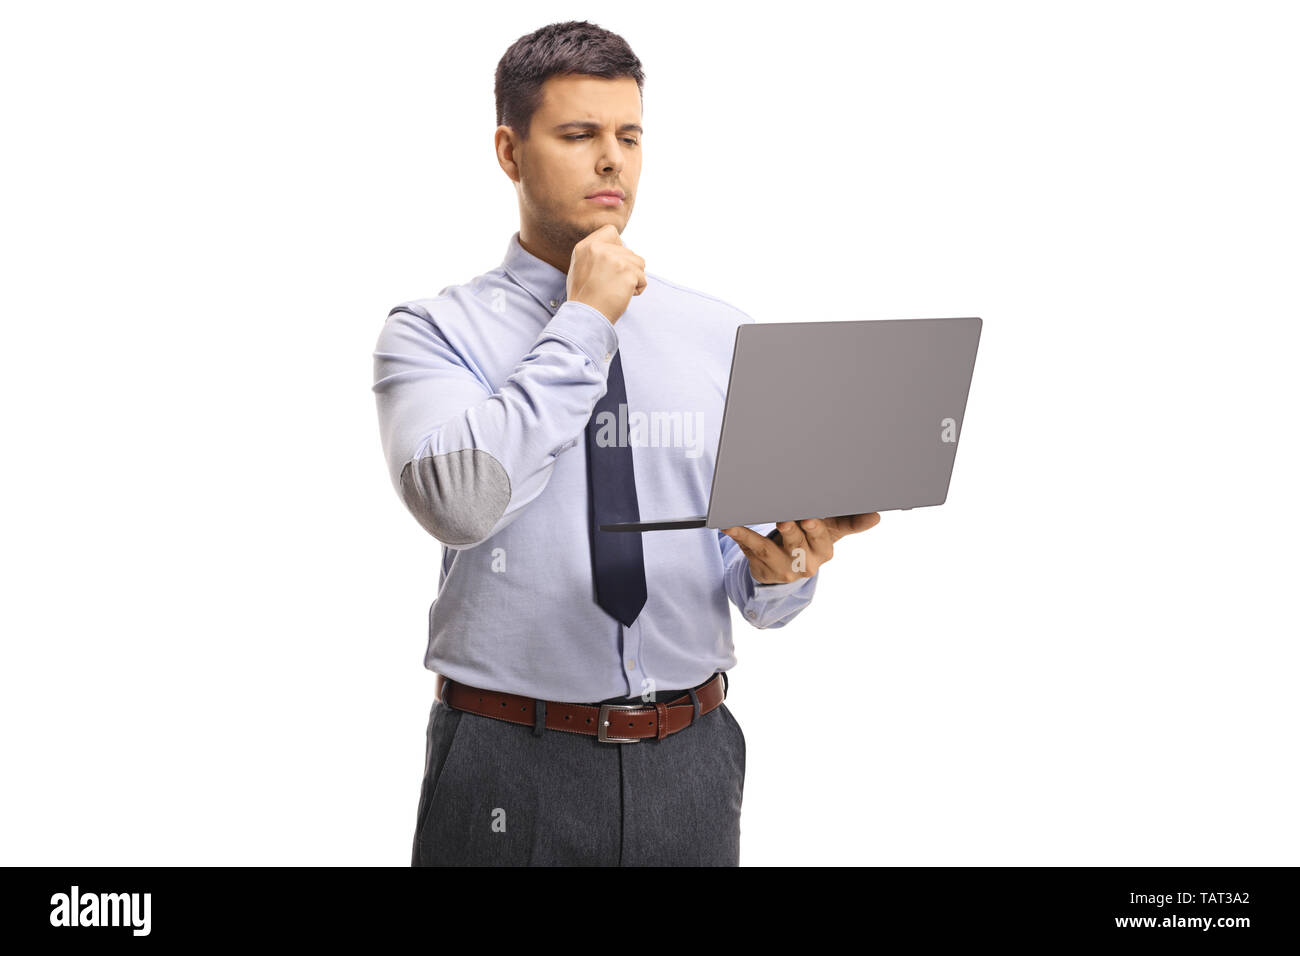 Homme tenant un ordinateur portable professionnel et pensée isolé sur fond blanc Banque D'Images